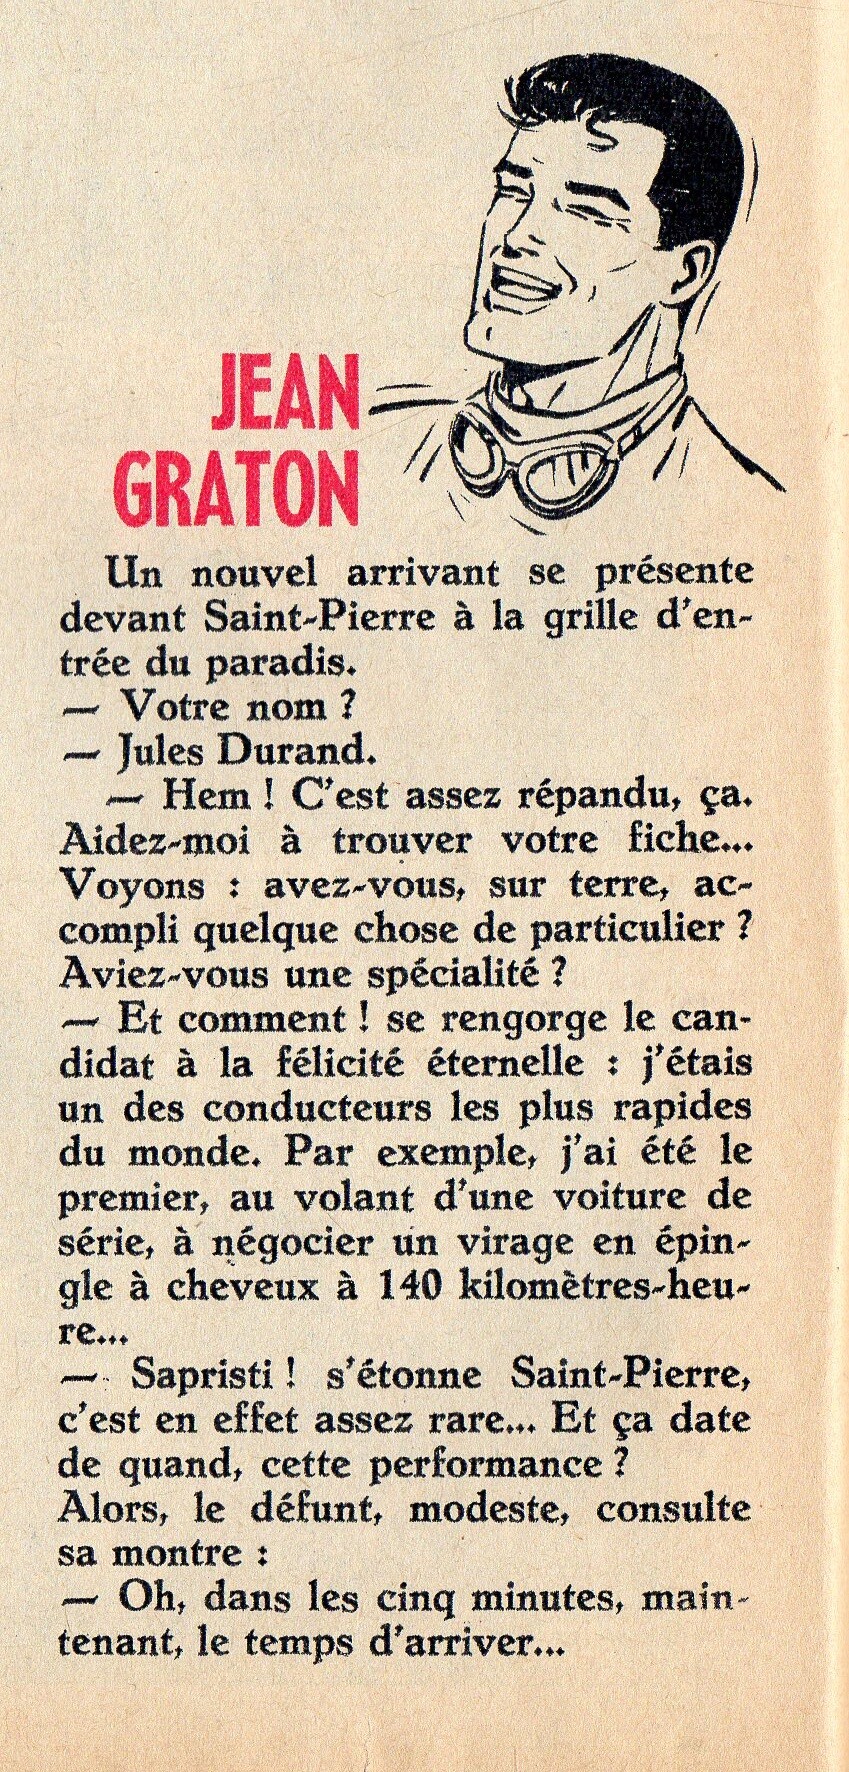 jean - Les articles sur Jean Graton dans le journal Tintin - Page 2 Jean_g83